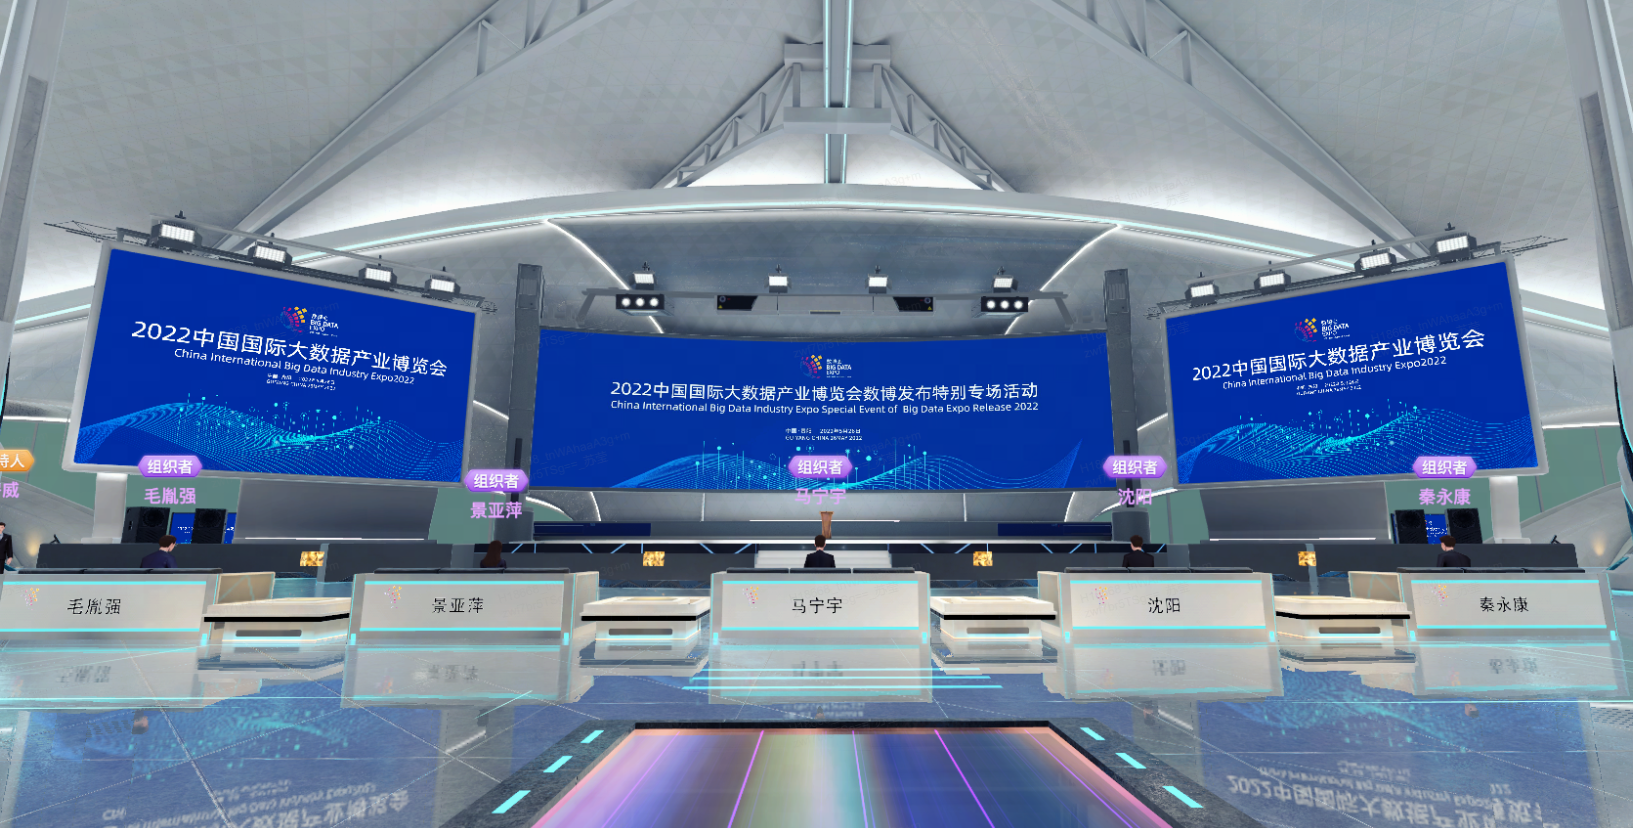 图片展示了一个现代化的室内环境，有多个屏幕显示2022年信息，前方有排列整齐的服务台和地面上色彩斑斓的灯光。